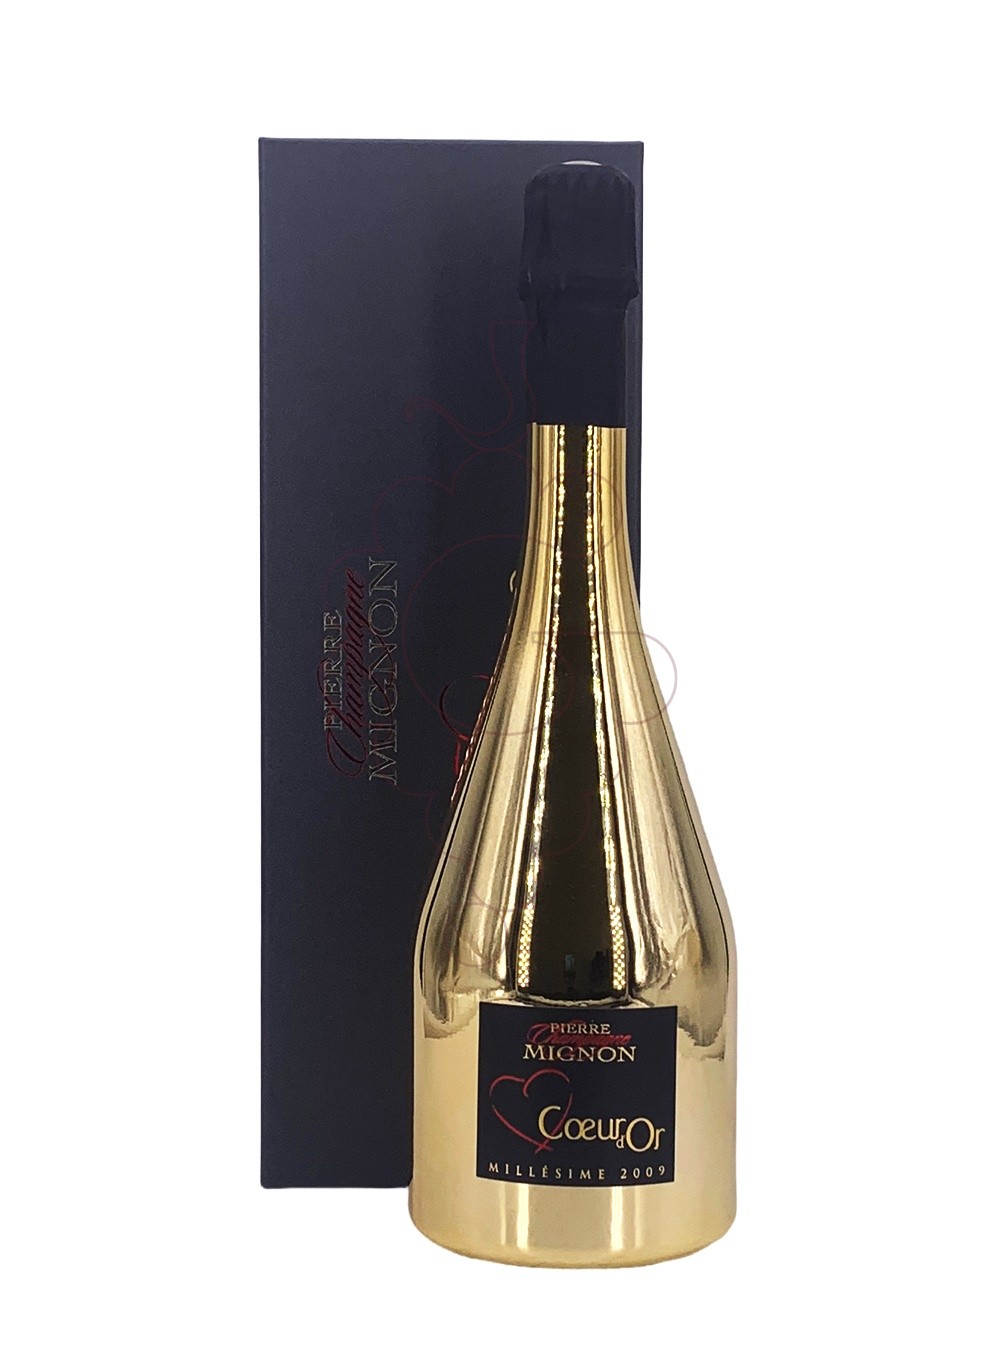 Photo Pierre Mignon Cuvée Coeur d'Or vin mousseux